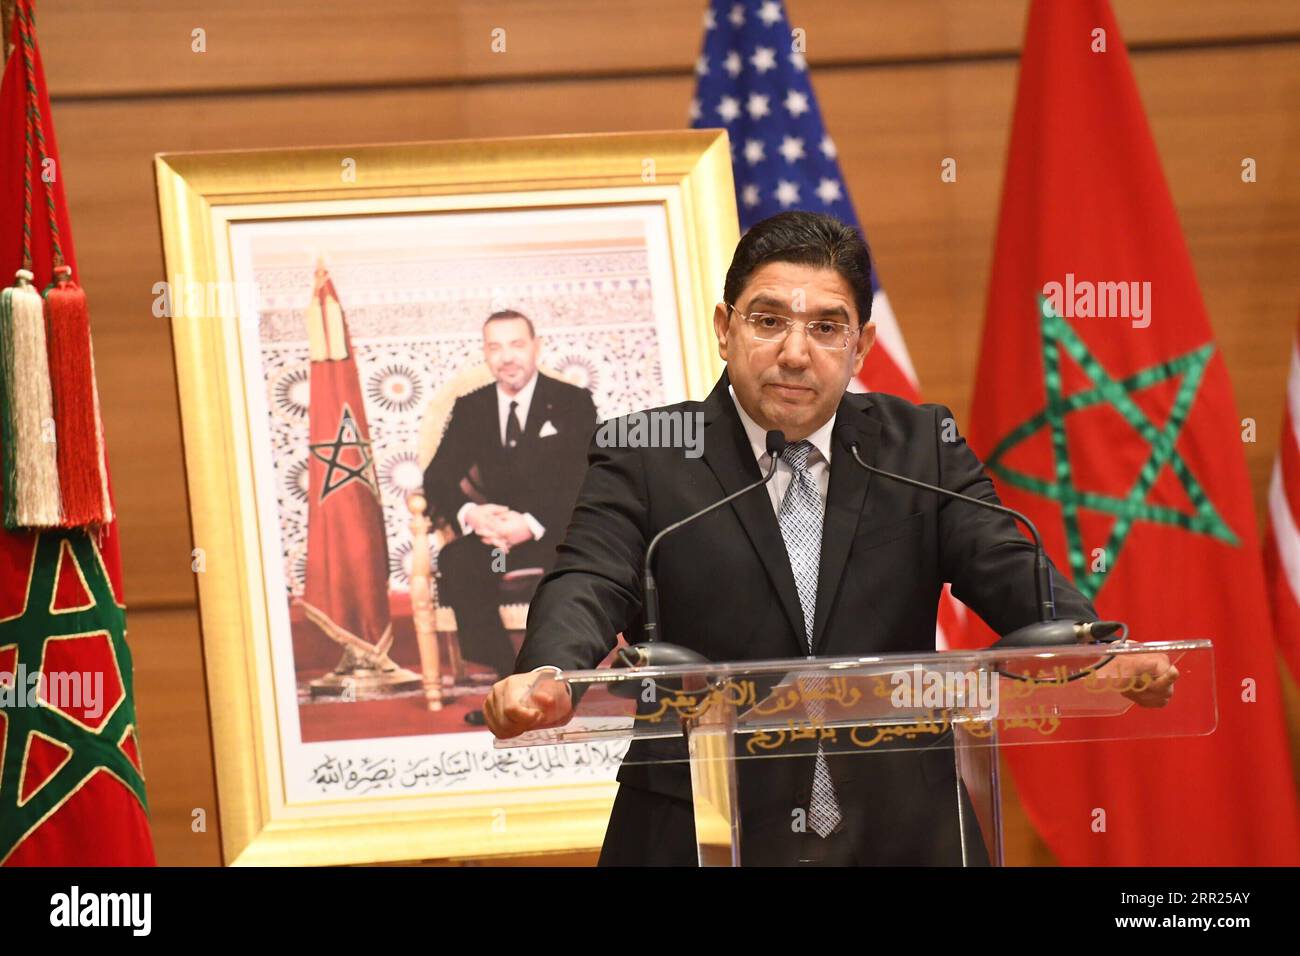 201002 -- RABAT, 2. Oktober 2020 -- der marokkanische Außenminister Nasser Bourita spricht auf einer Pressekonferenz mit dem US-Verteidigungsminister Mark Esper, der am 2. Oktober 2020 nicht auf dem Bild in Rabat, Marokko, zu Gast war. Marokko und die Vereinigten Staaten unterzeichneten am Freitag einen 10-jährigen Fahrplan für die Zusammenarbeit im Verteidigungsbereich, so diplomatische Quellen. Foto: /Xinhua MOROCCO-RABAT-FM-U.S.-DEFENSE SECRETARY-DEFENSE COOPERATION Chadi PUBLICATIONxNOTxINxCHN Stockfoto